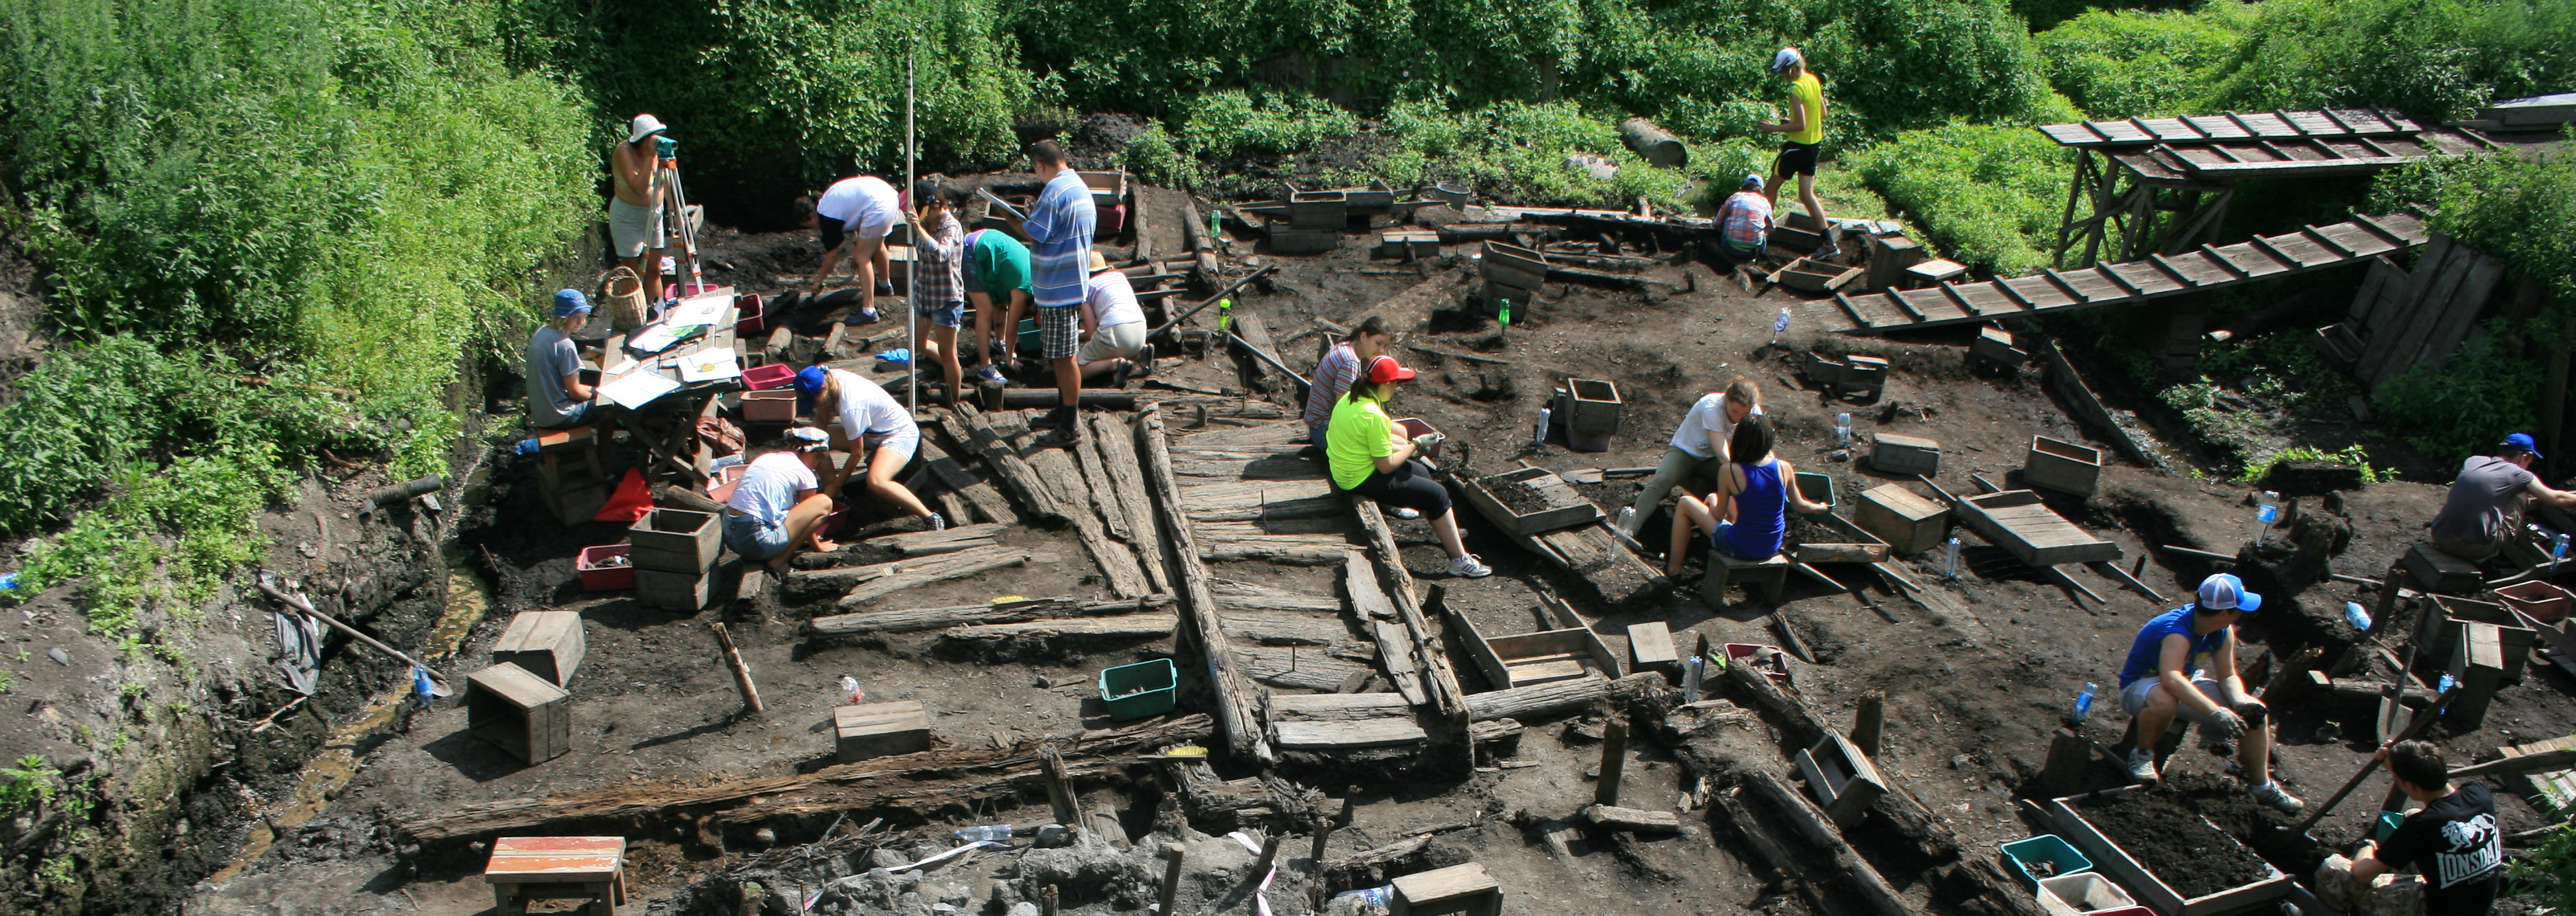 Проект по комплексному изучению археозоологического материала, происходящего с усадьбы "Ж" Троицкого раскопа в Великом Новгороде